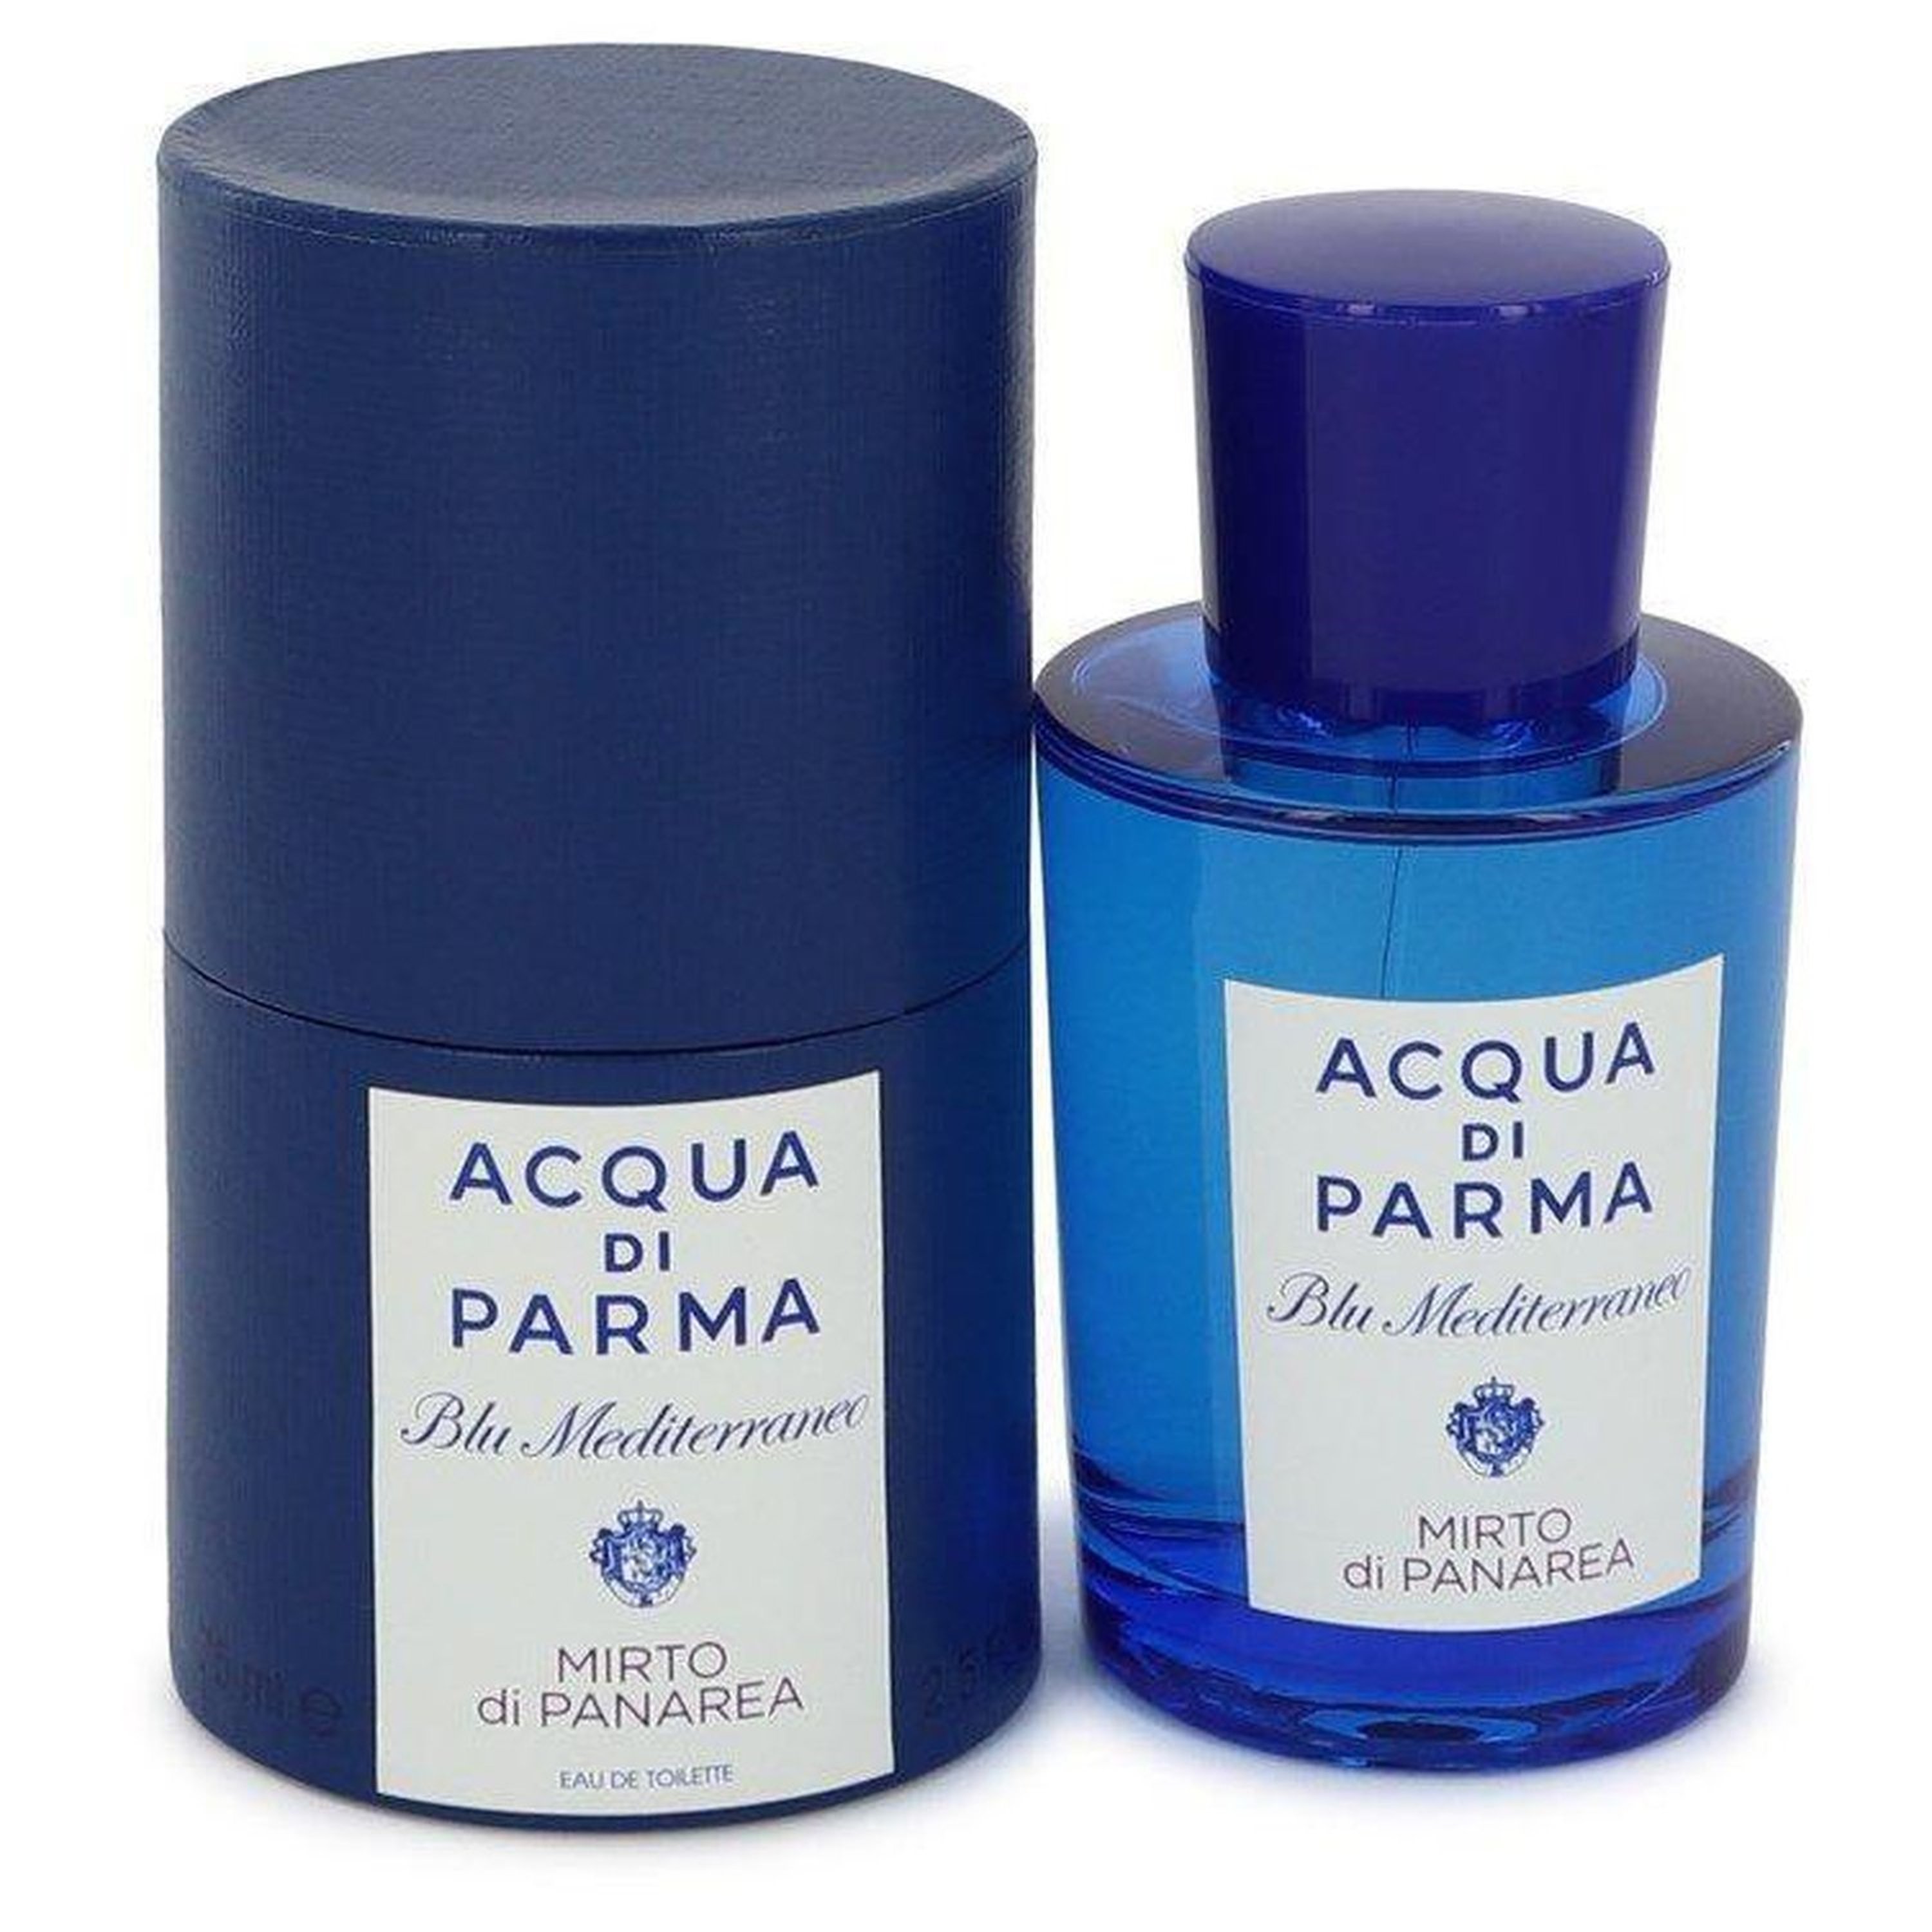 Royall Fragrances Acqua Di Parma Blu Mediterraneo Mirto Di Panarea By Acqua Di Parma Eau De Toilette Spray (unisex) 2.